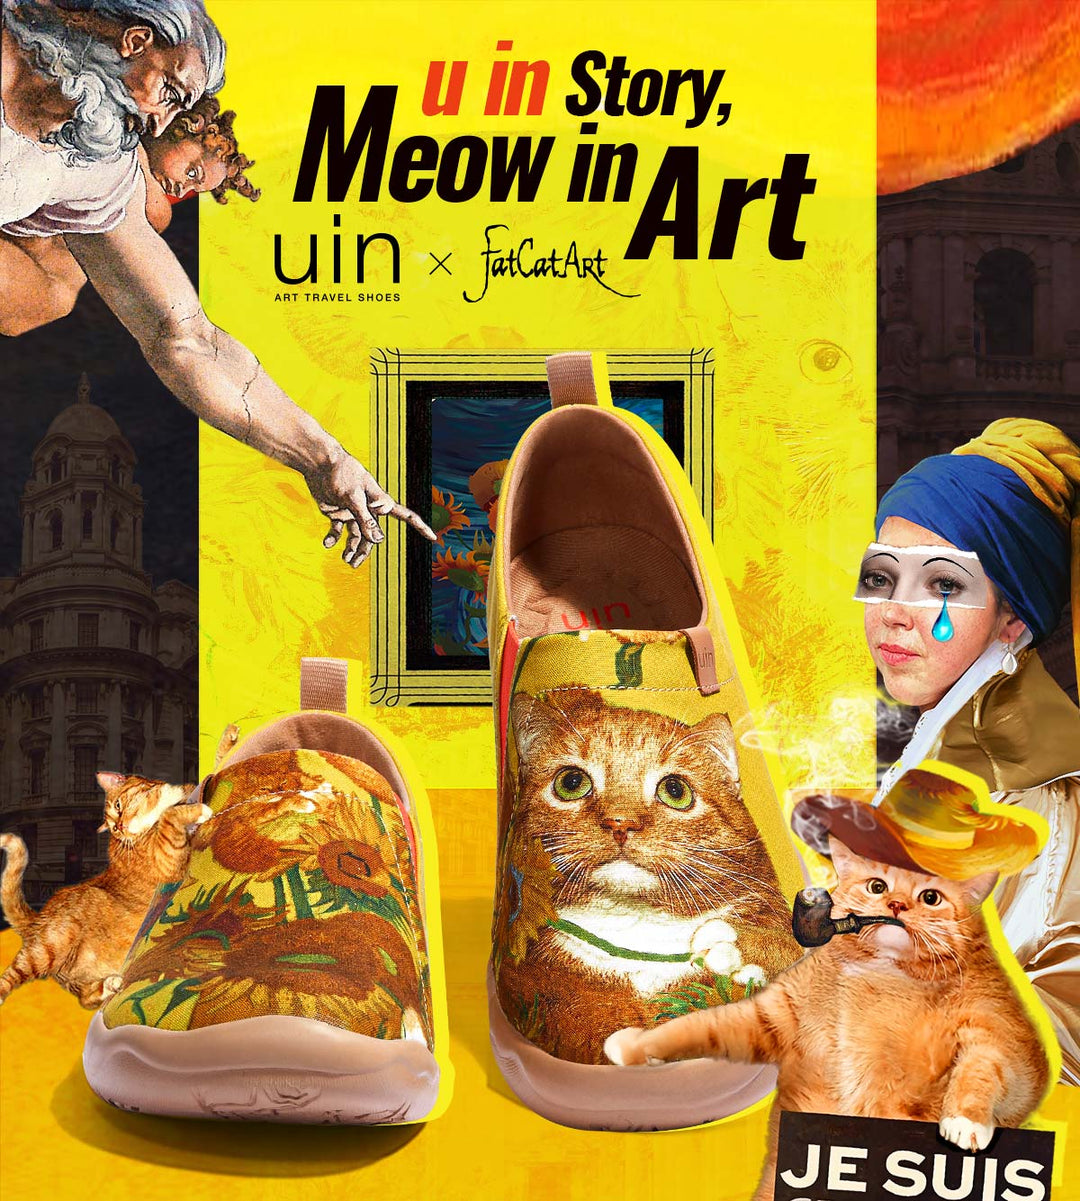 U in Story, Meow in Art